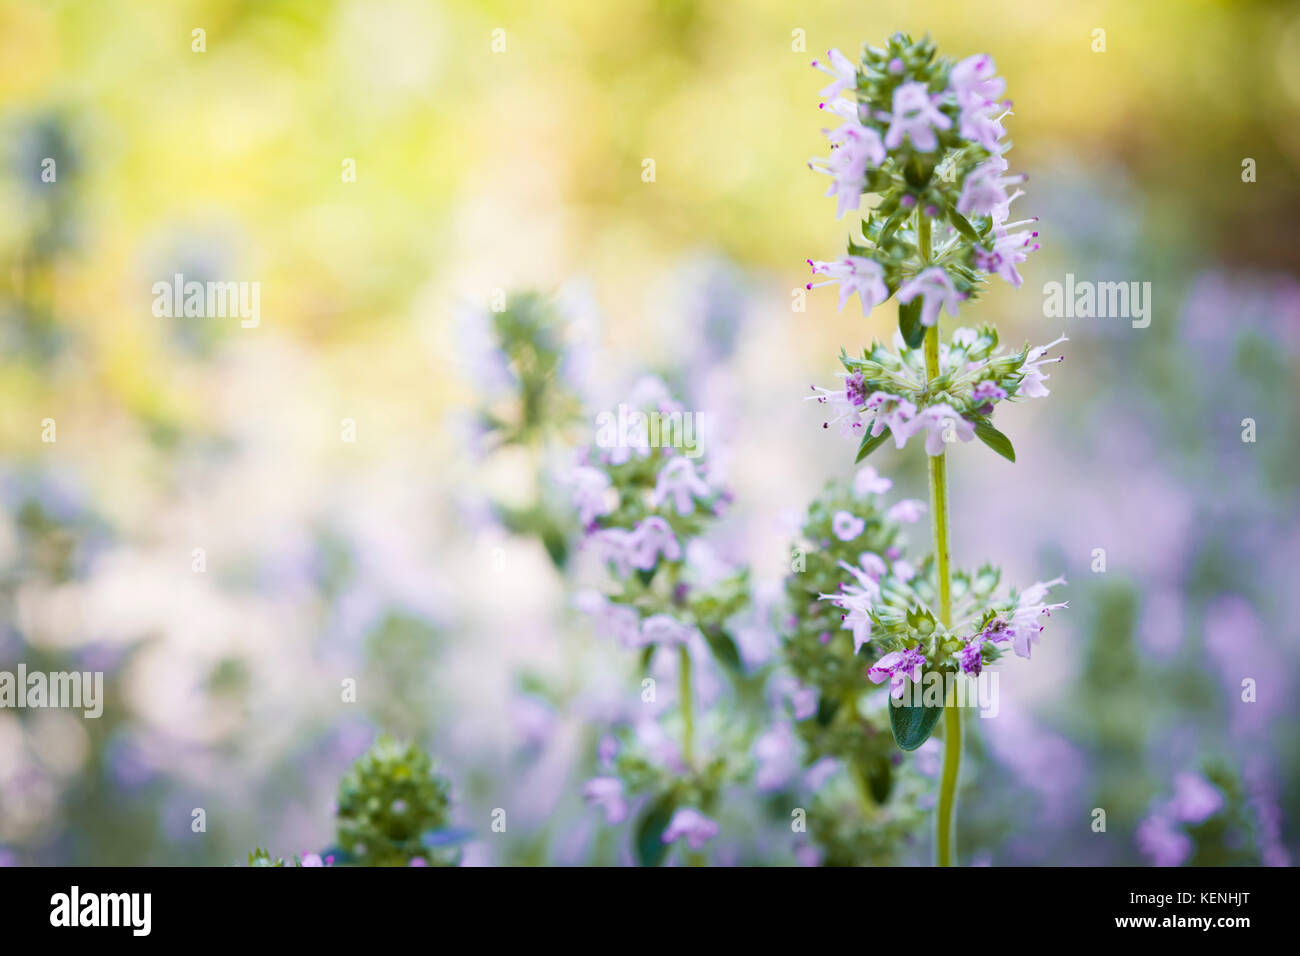 Blumen von Thymian Kraut im sonnigen Sommergarten, Makro Nahaufnahme. Stockfoto